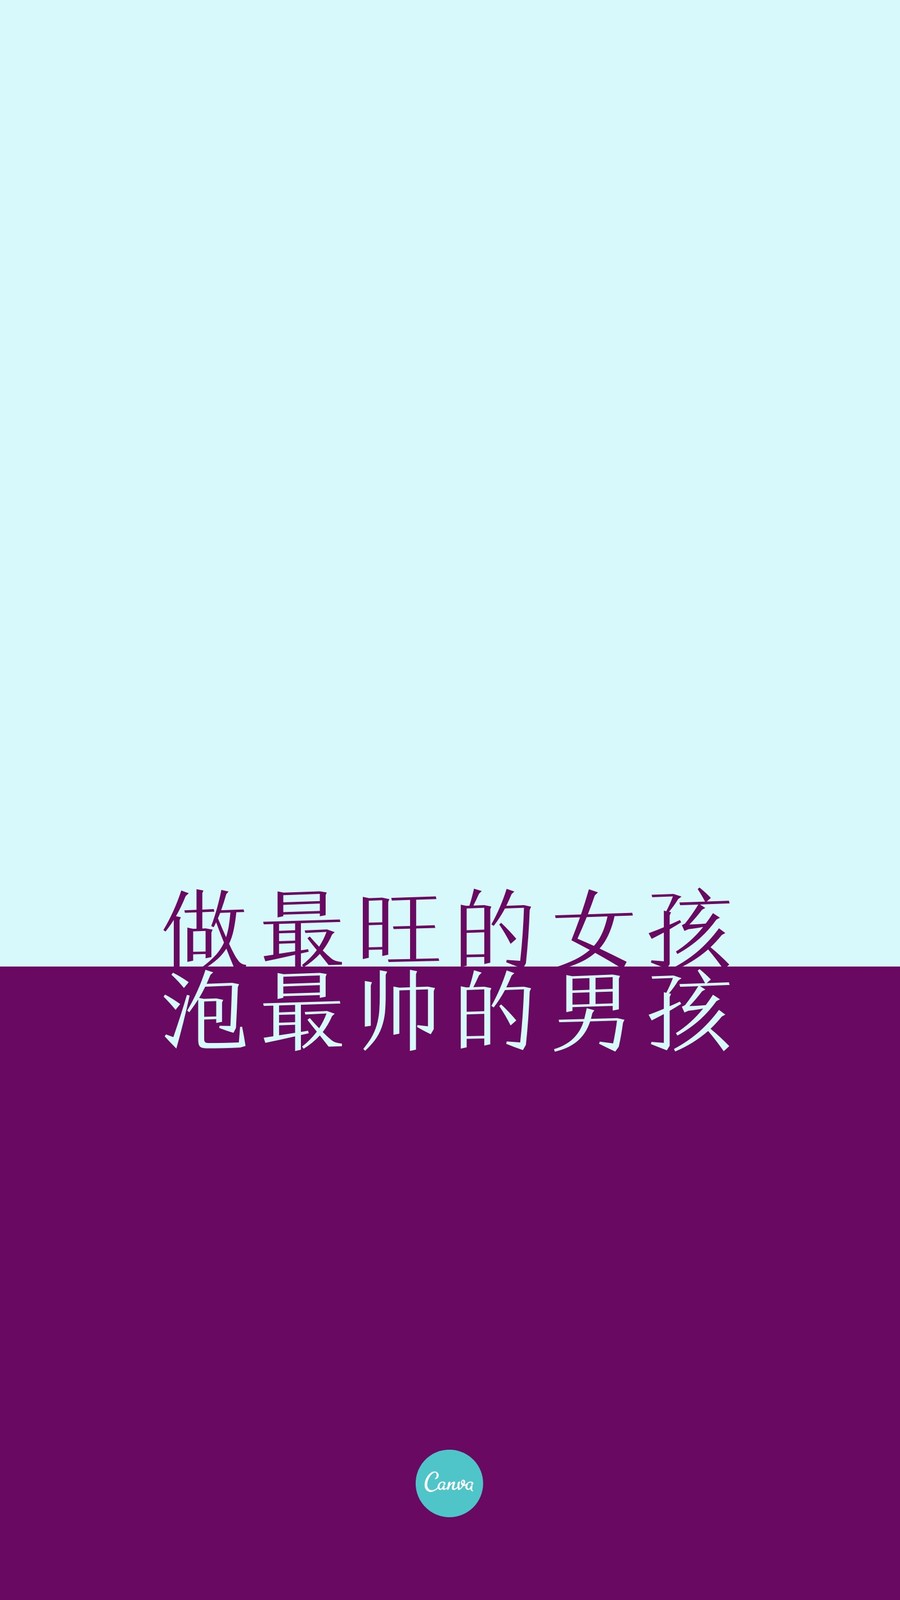 紫蓝色拼接简洁个人交流中文手机壁纸